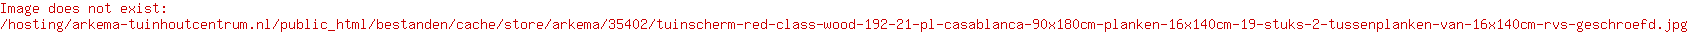 Tuinscherm Red Class Wood (19+2) 21-pl. Casablanca 90x180cm Planken: 1.6x14.0cm / 19 stuks 2 tussenplanken van 1.6x14.0cm, rvs geschroefd